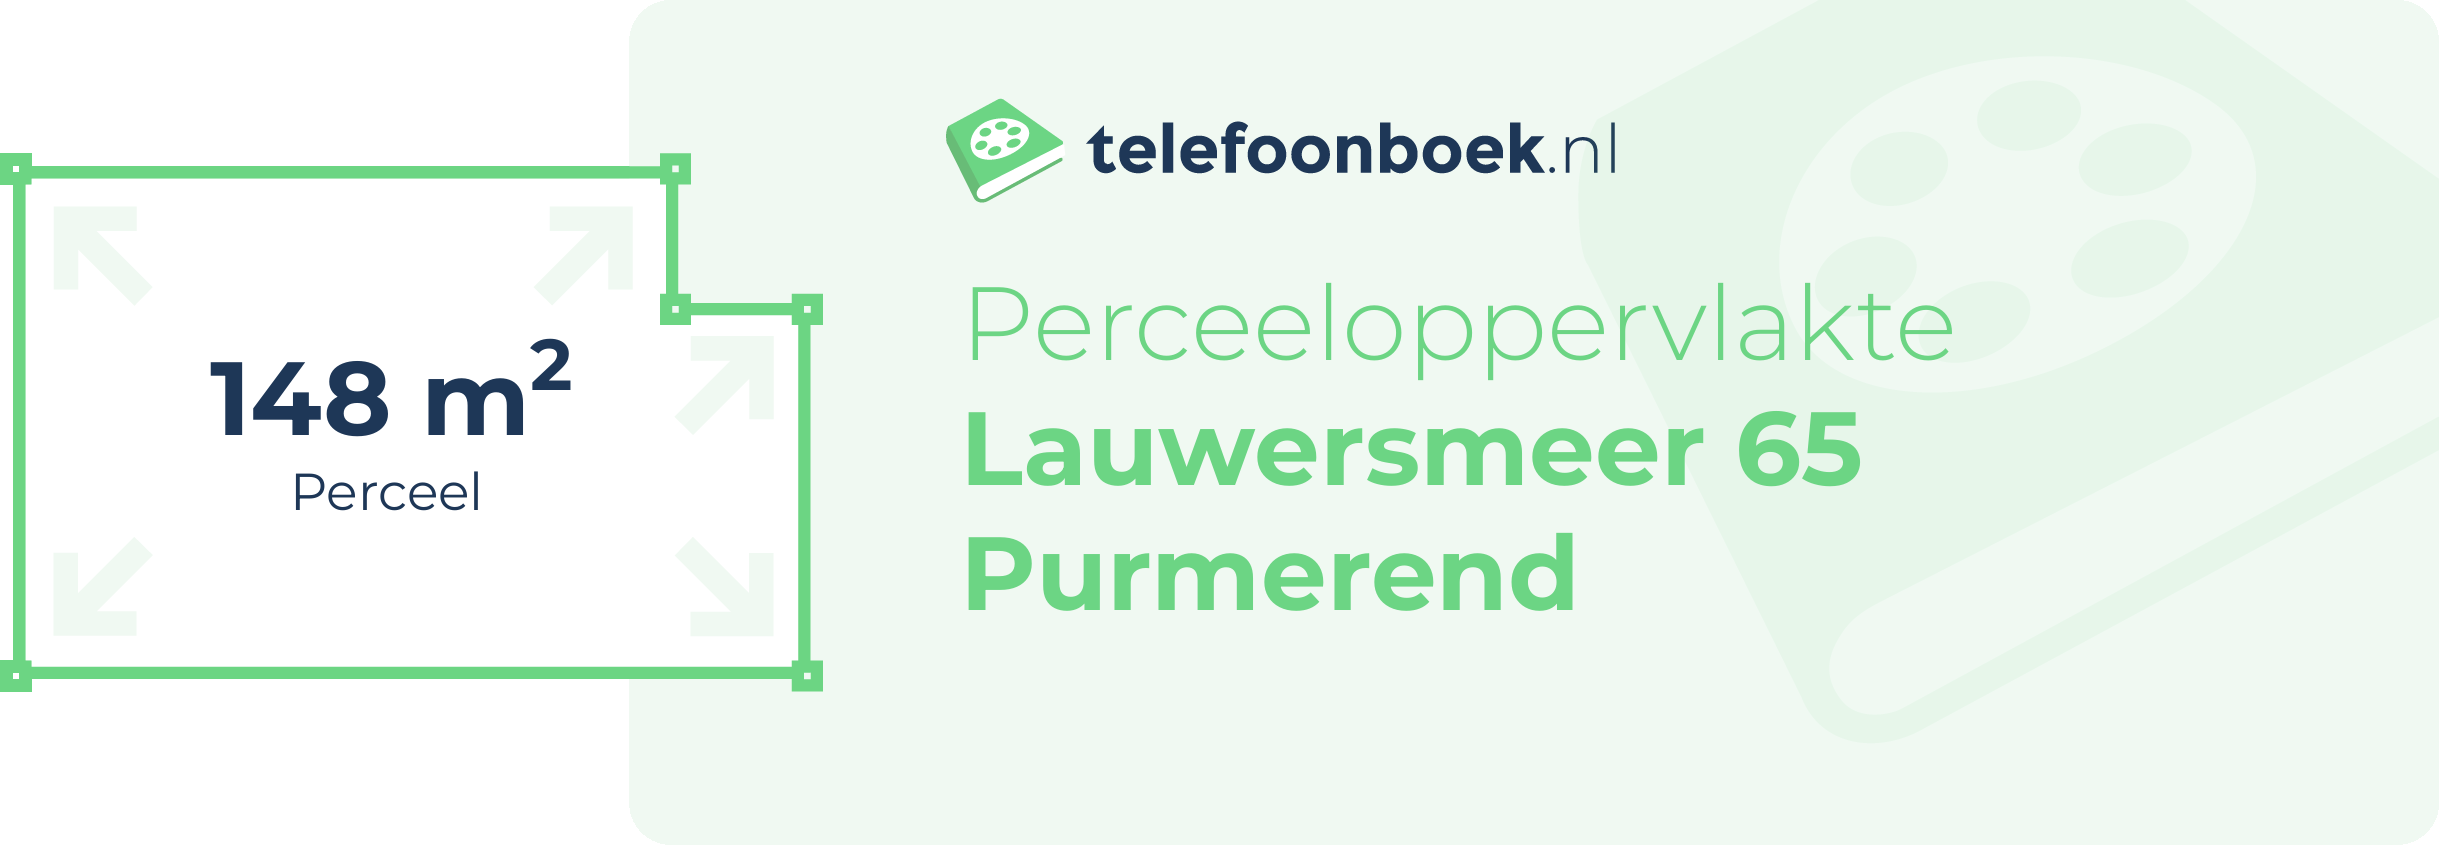 Perceeloppervlakte Lauwersmeer 65 Purmerend